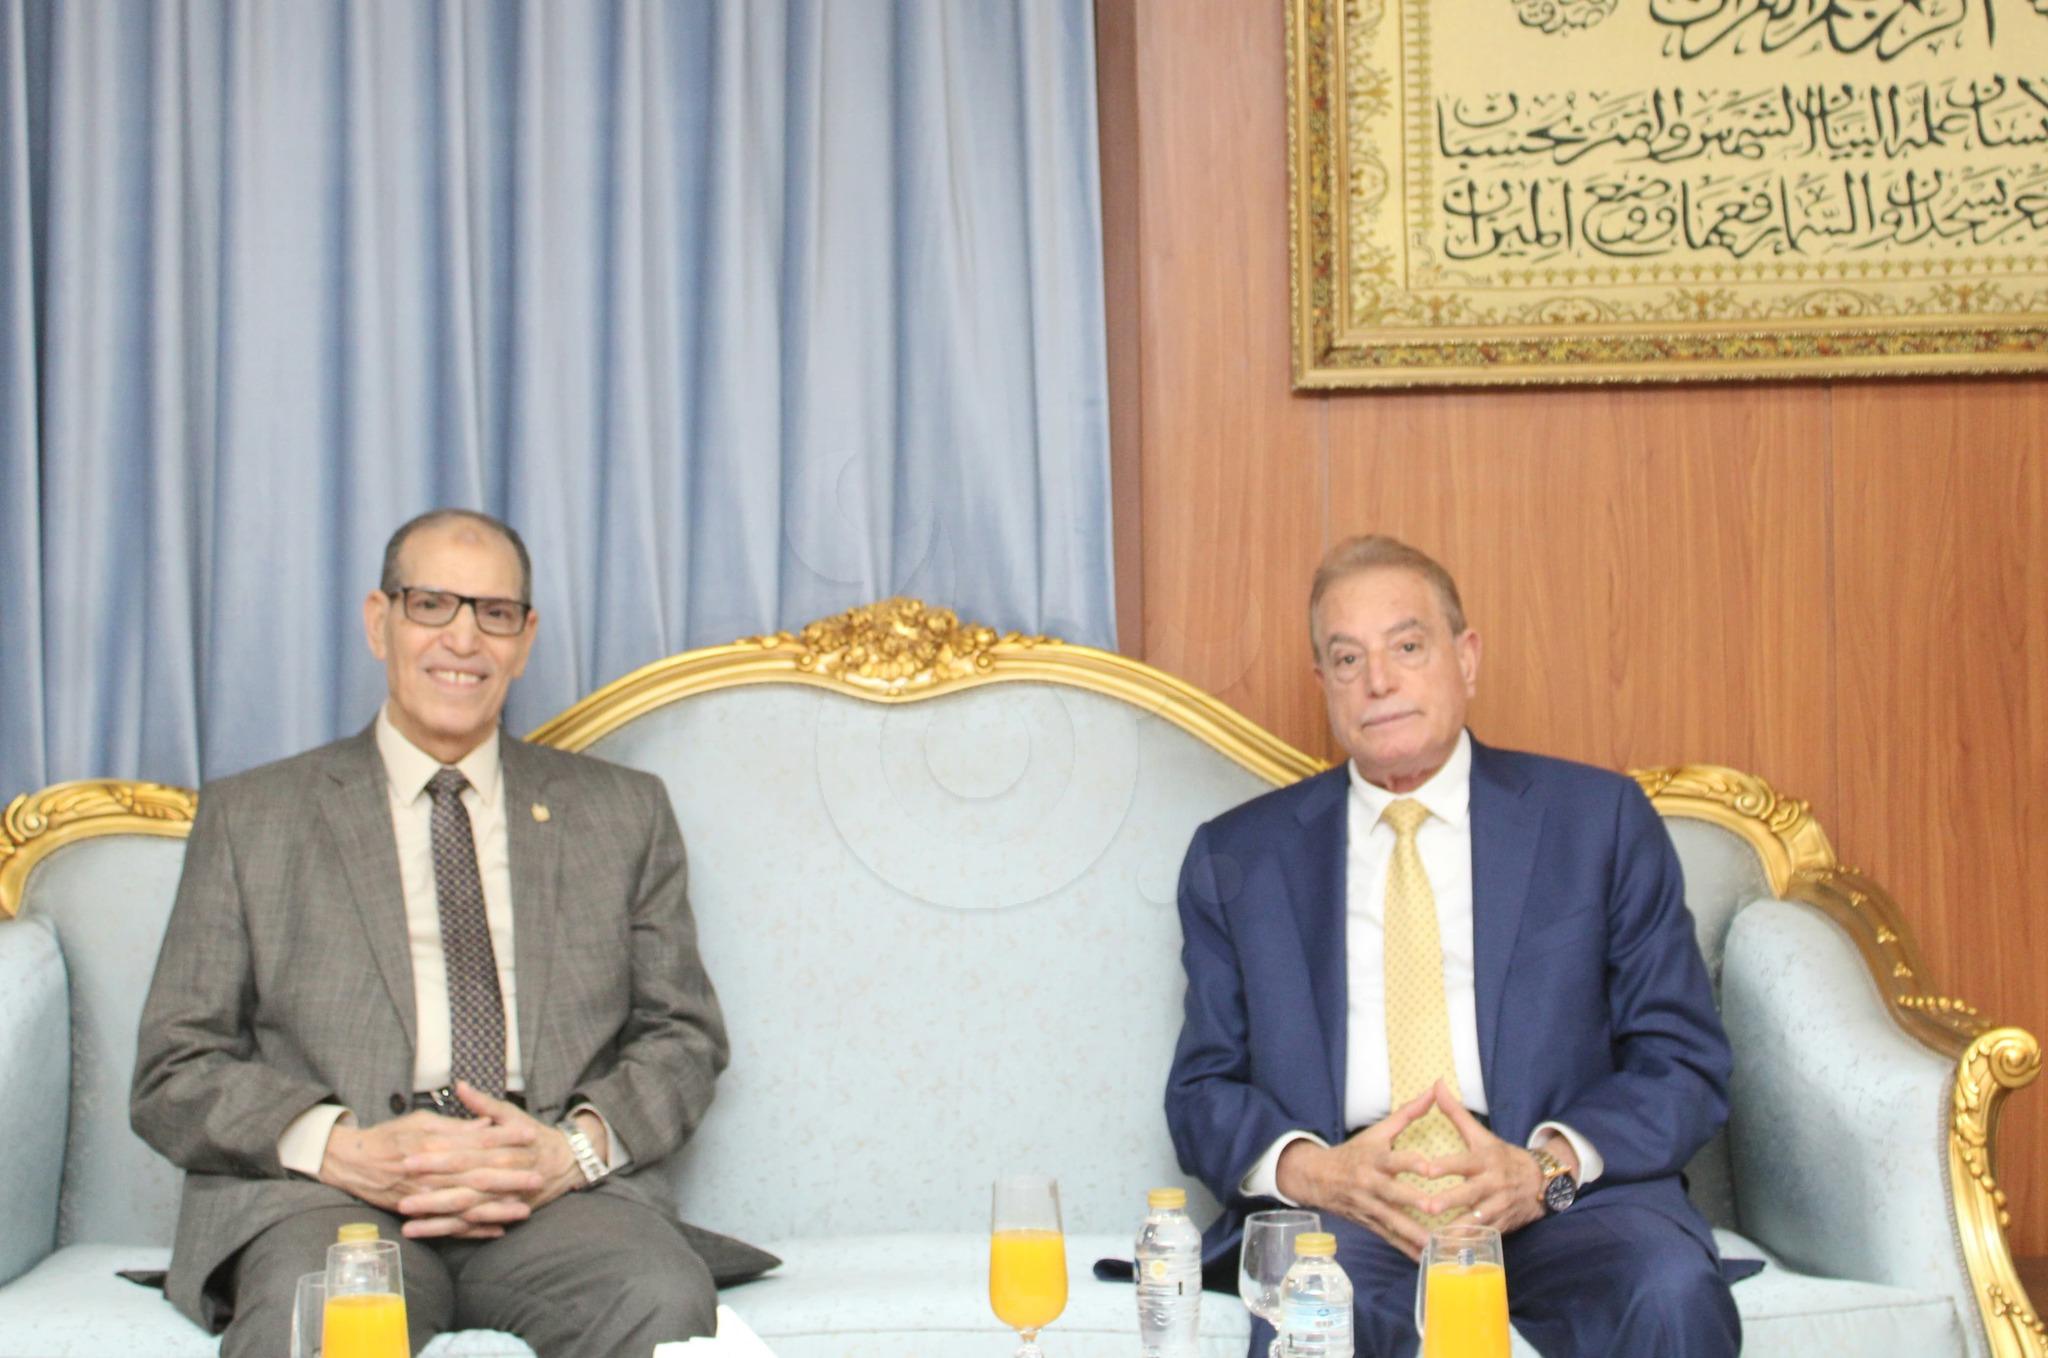 رئيس هيئة النيابة الإدارية يستقبل محافظ جنوب سيناء لتعزيز التعاون المشترك